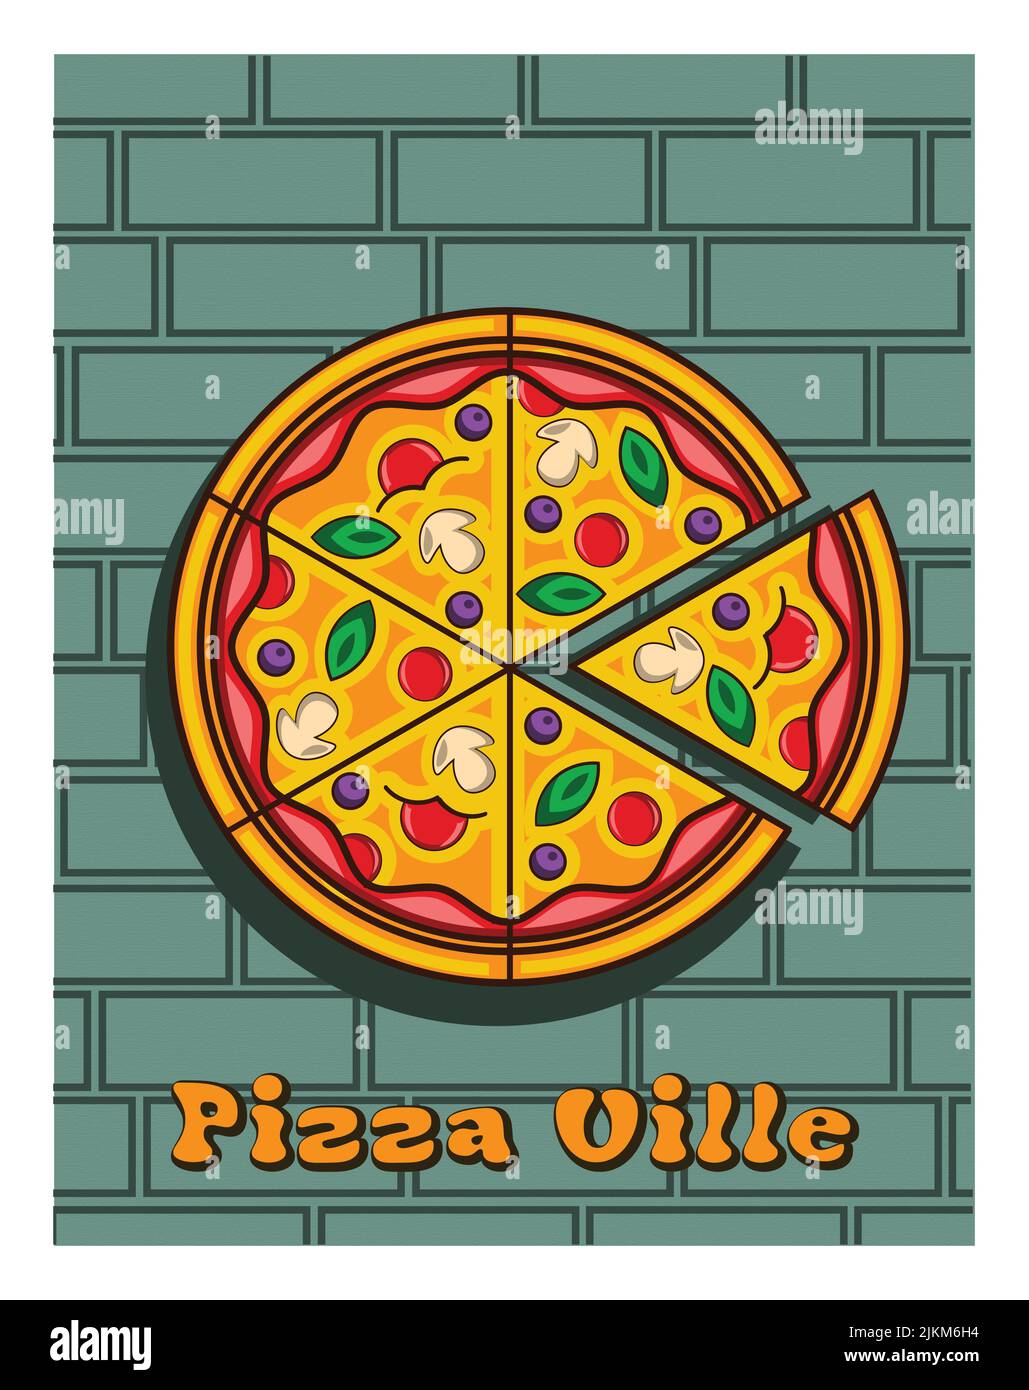 Eine vertikale Abbildung einer runden, sechsteiligen Pizza mit Pizza Ville-Text auf einem grünen Backstein-Hintergrund Stockfoto